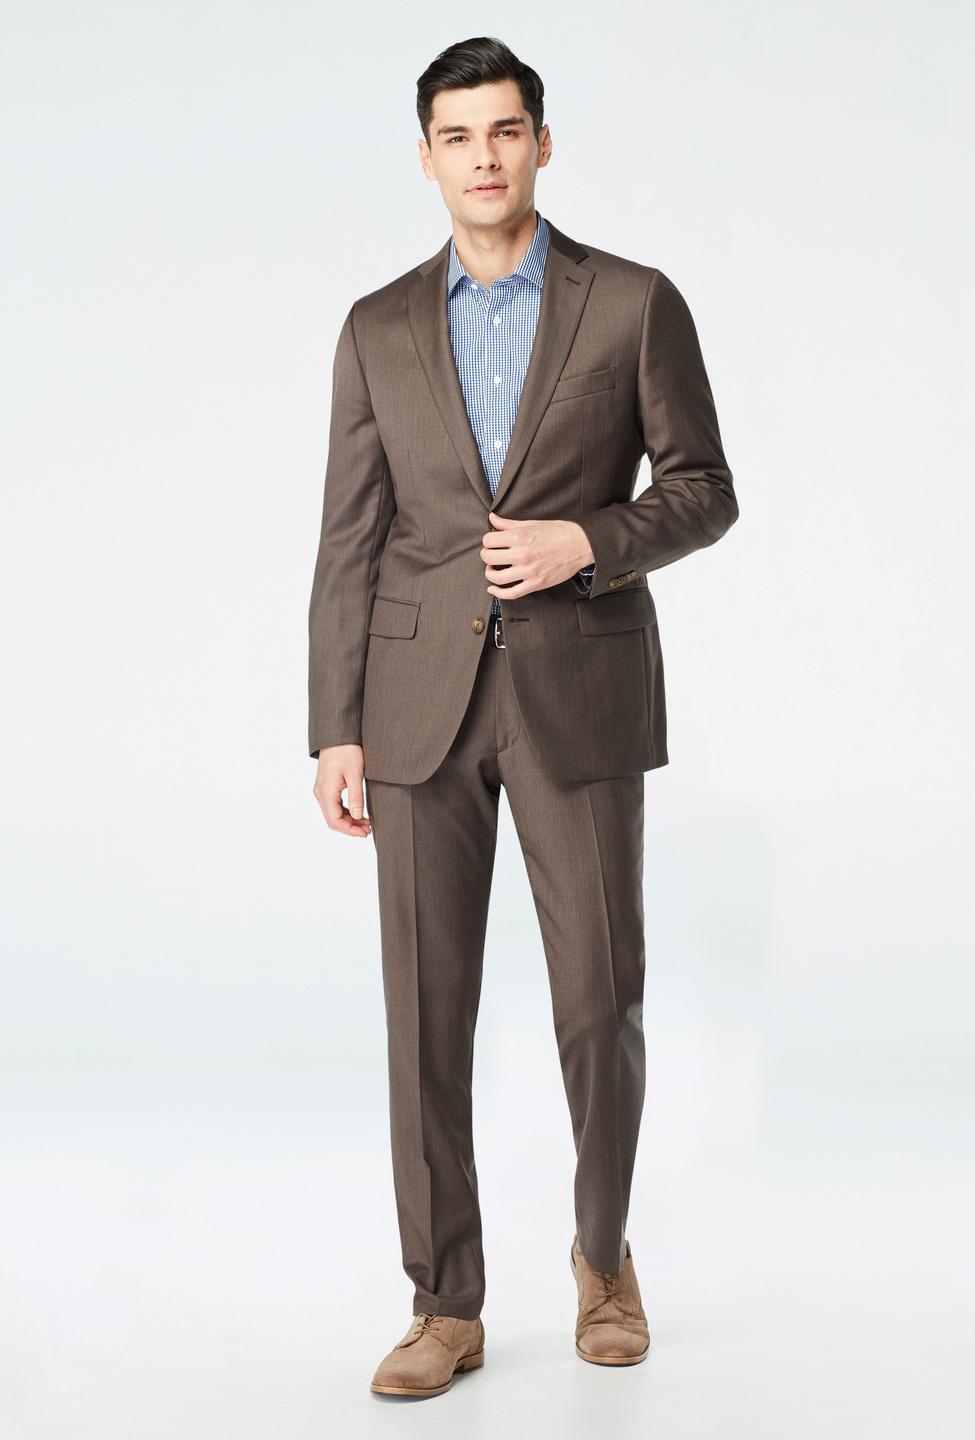 Brown blazer - Hemsworth Solid Design from Premium Indochino Collection